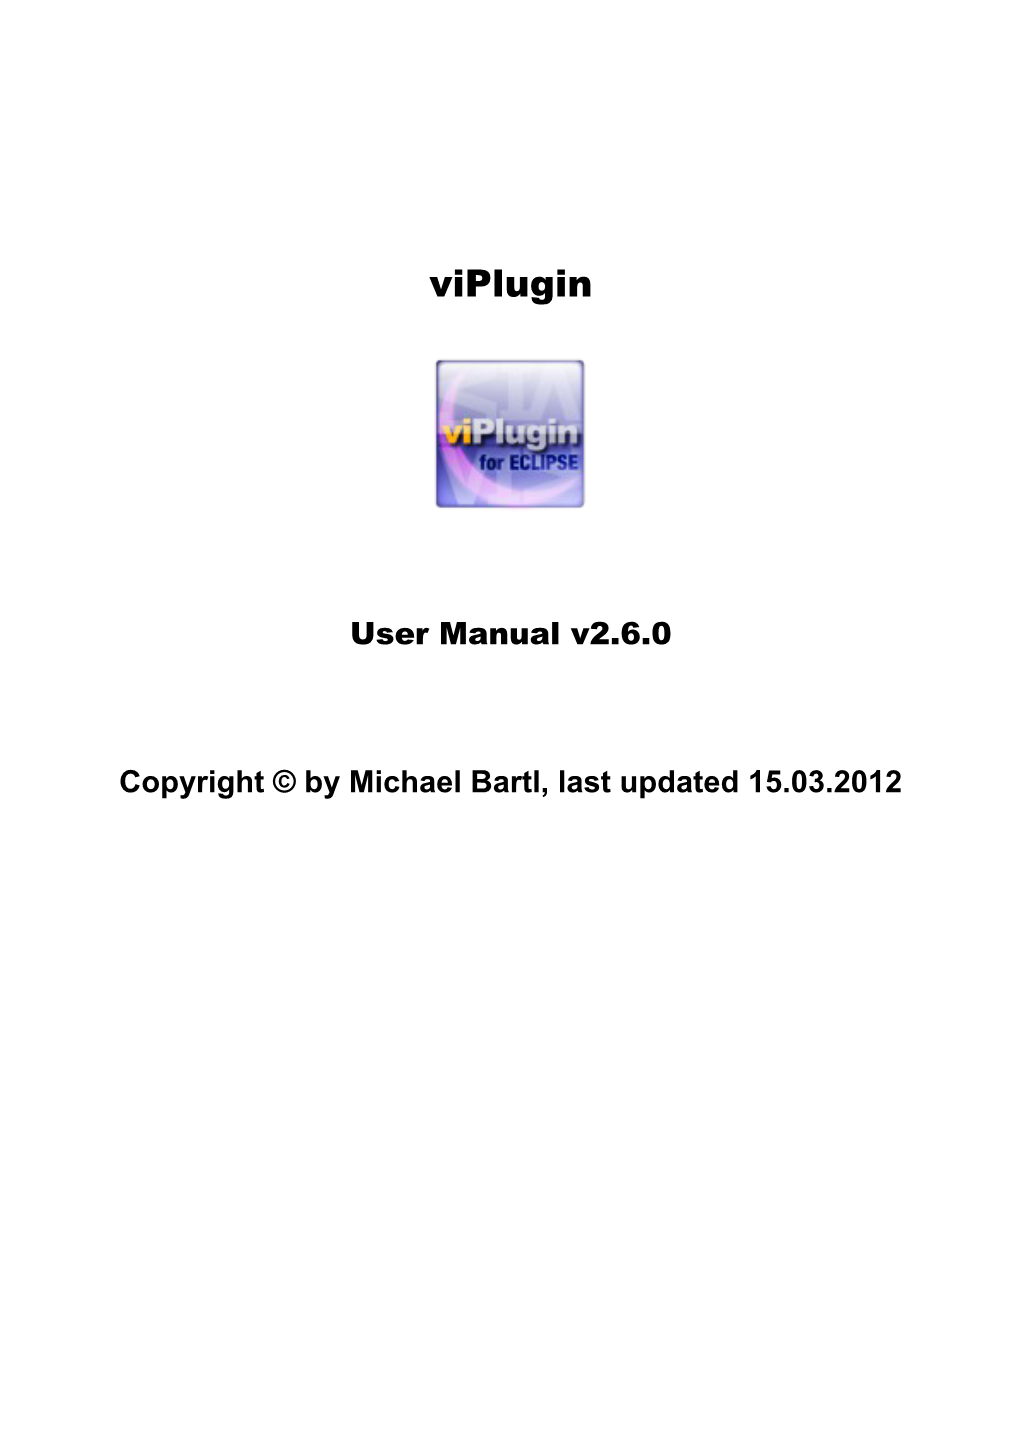 User Manual V2.6.0